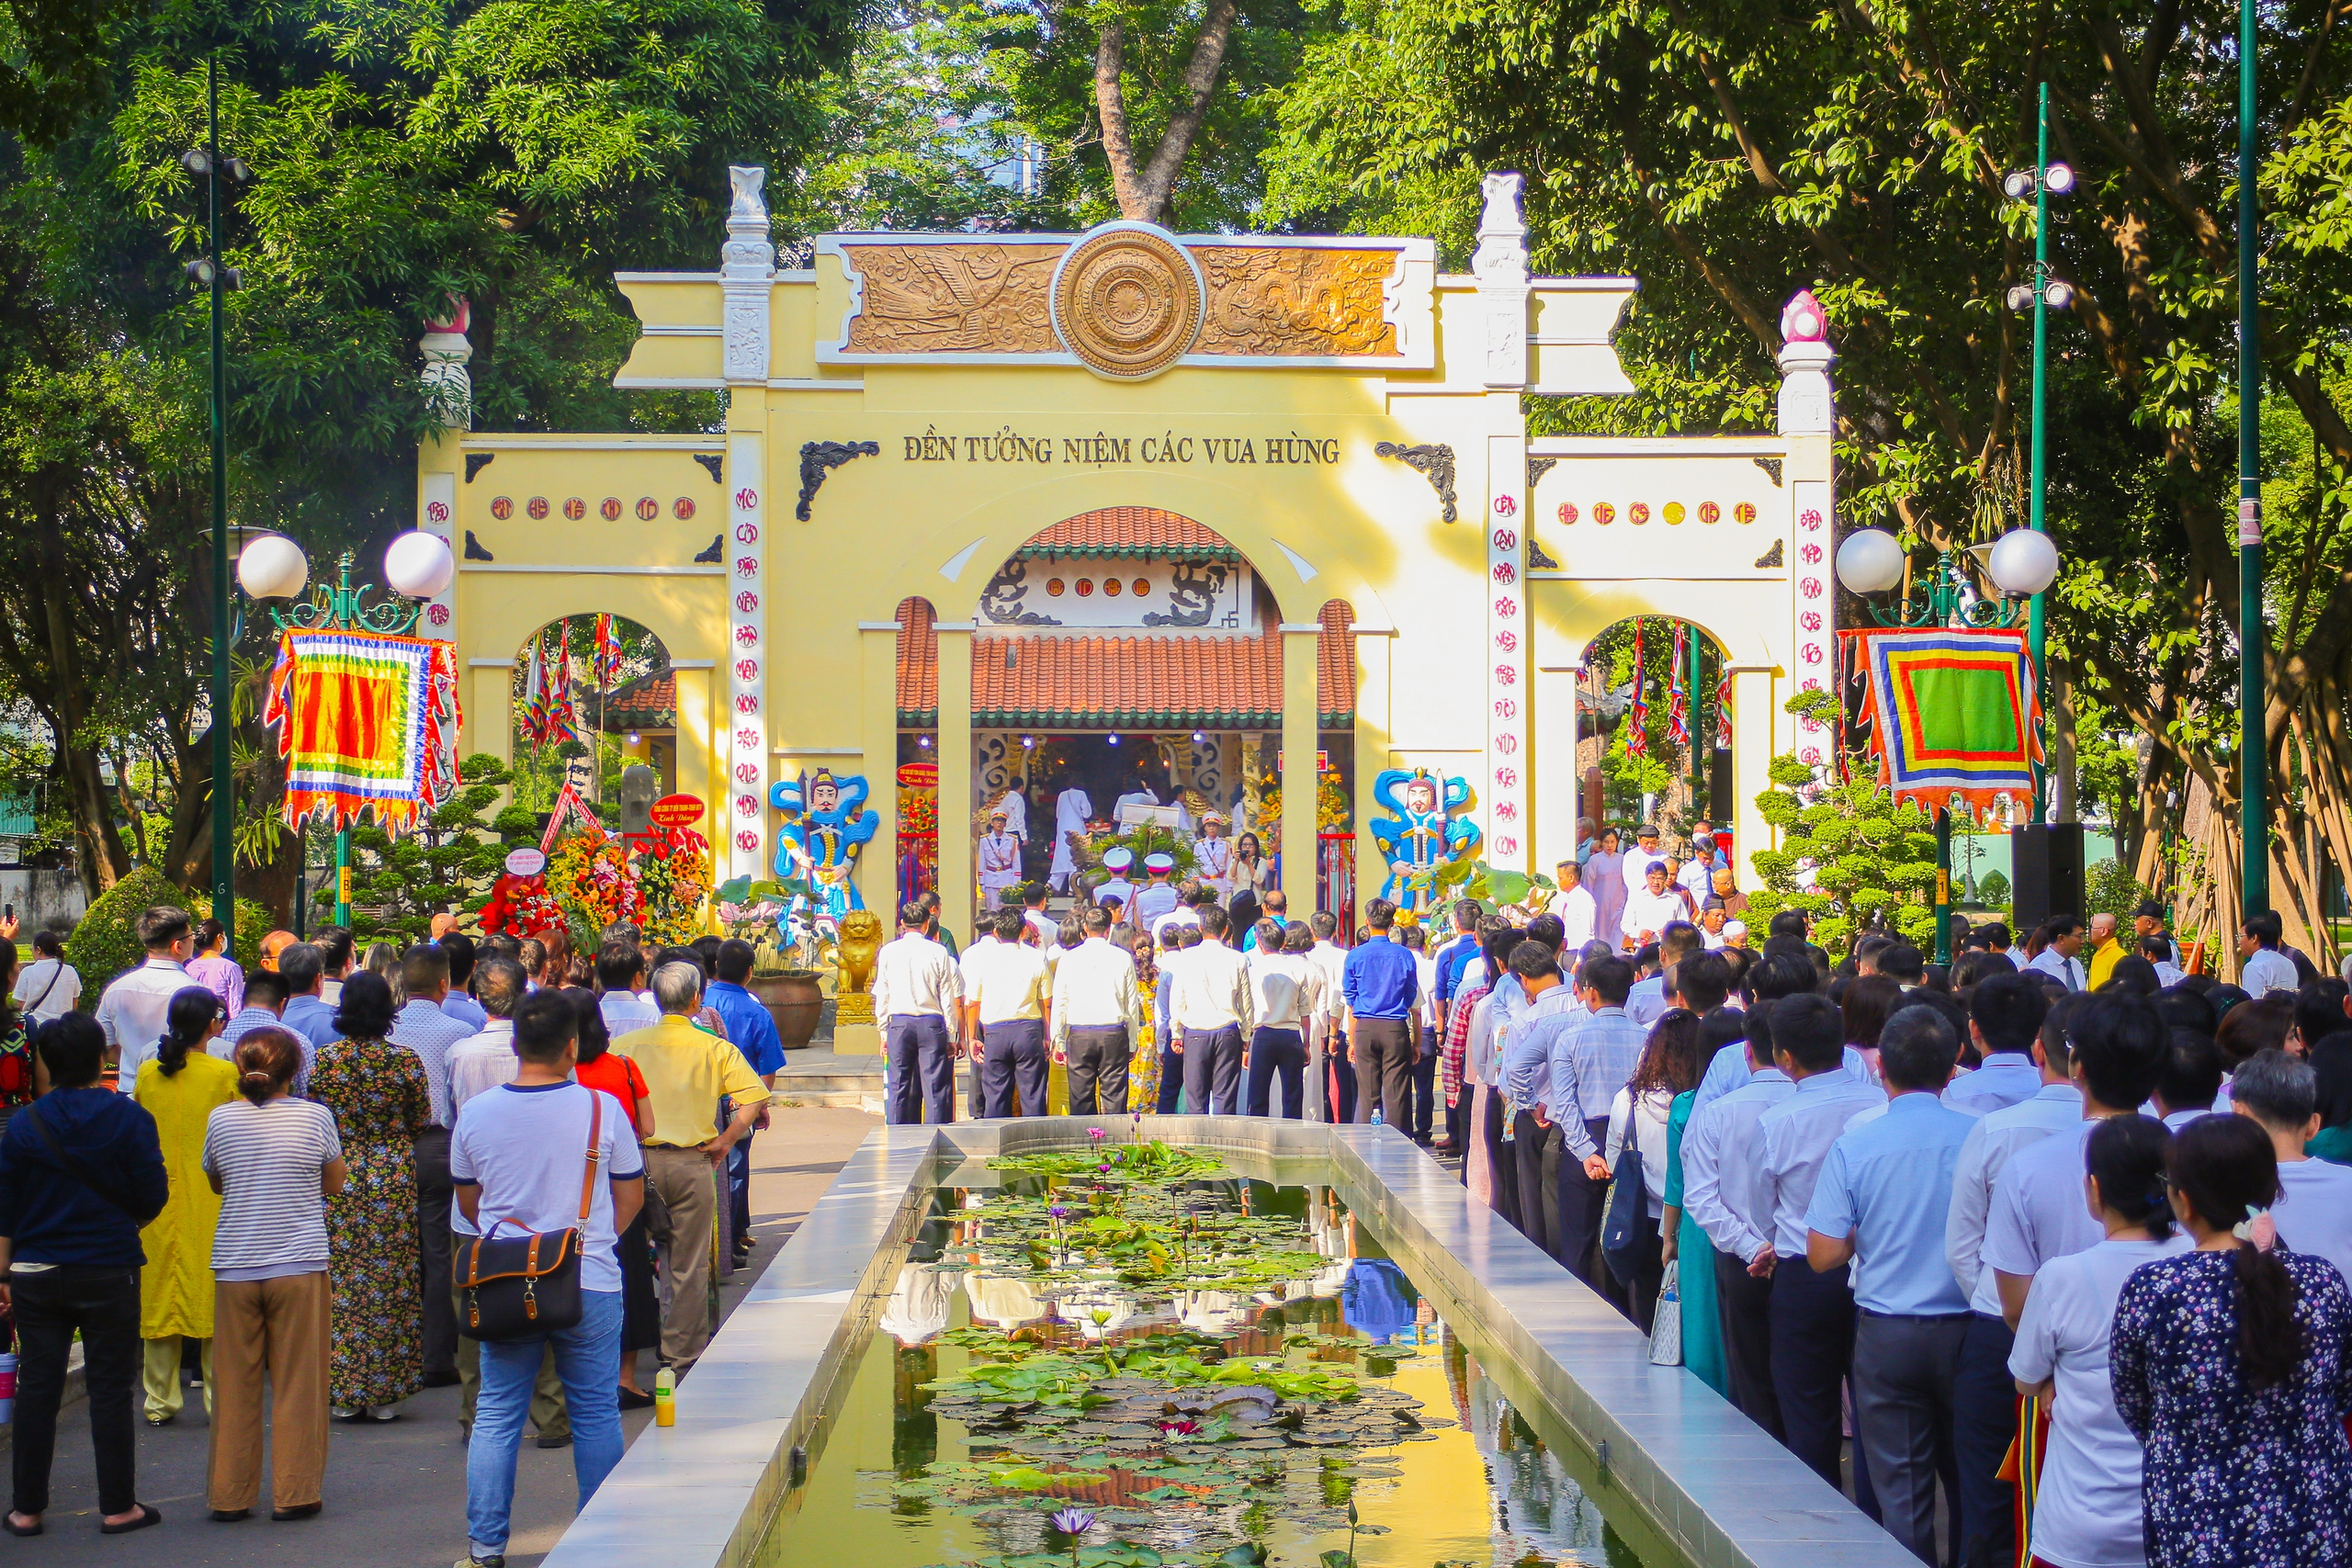 Hàng ngàn người Sài Gòn dâng hương tưởng niệm các vua Hùng- Ảnh 1.